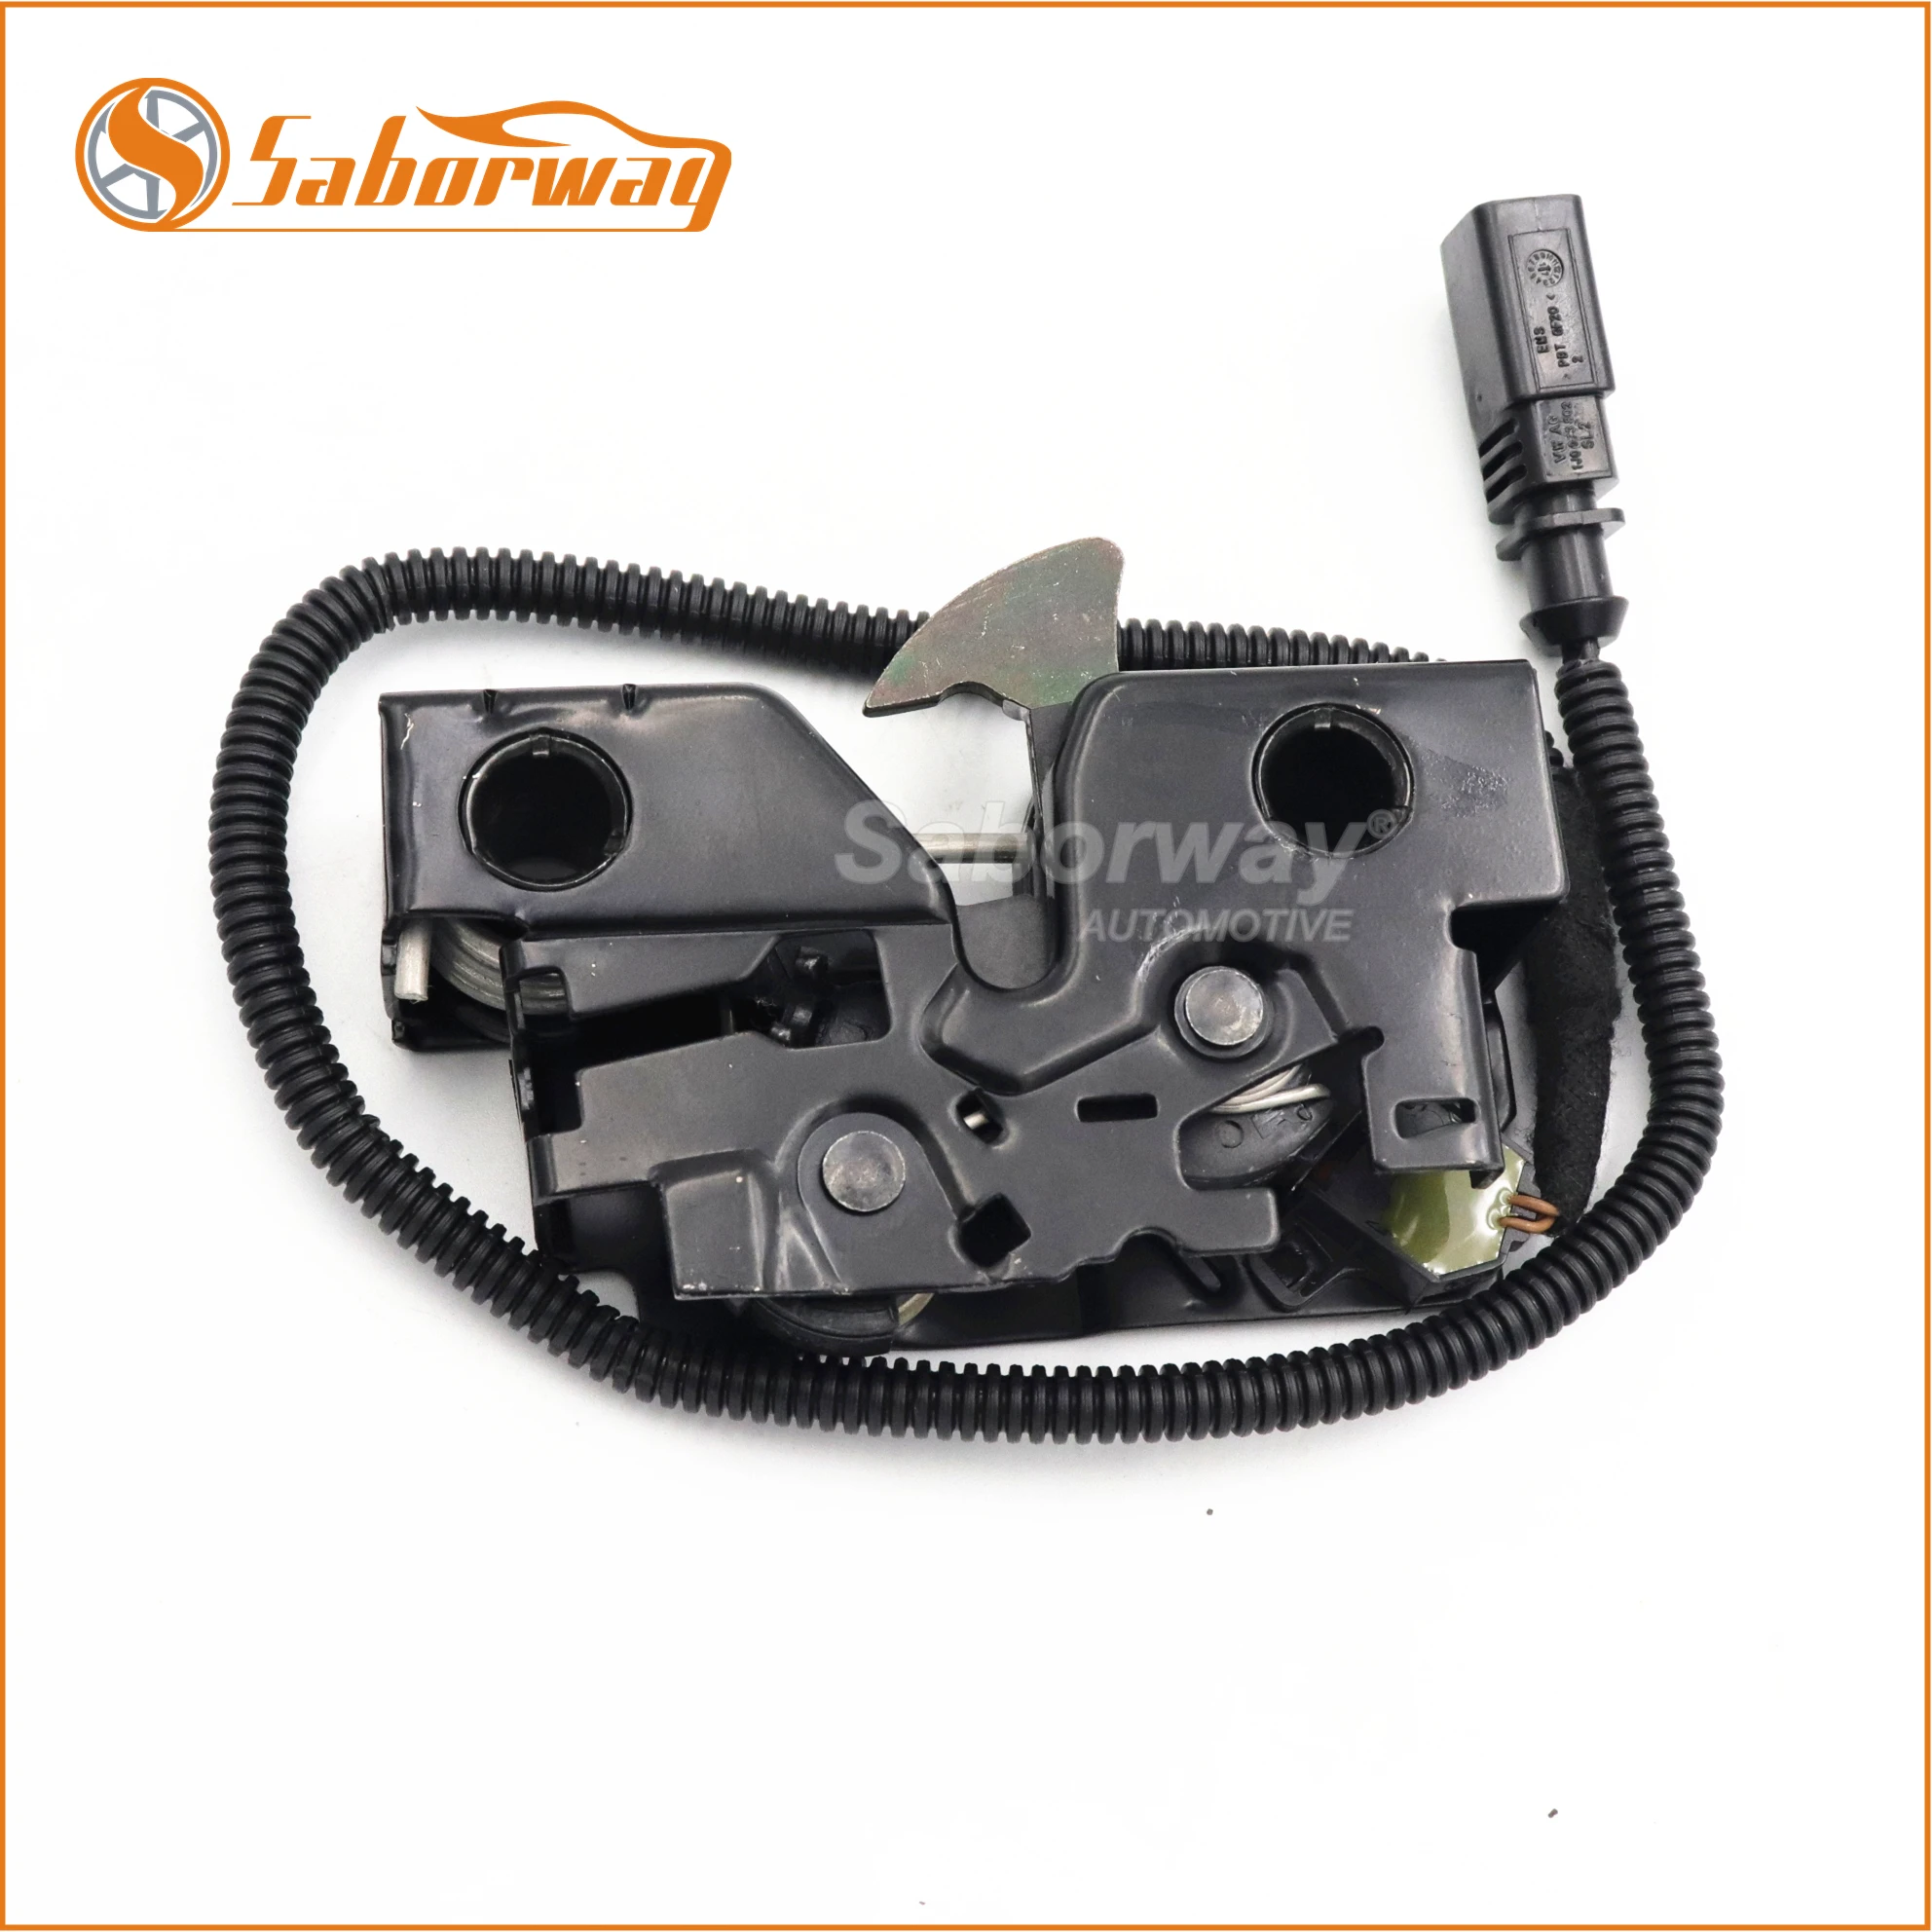 Saborway-Mecanismo de bloqueo del capó del motor, Micro Cable de interruptor para Golf MK7, e-golf, Passat, Tiguan, Touran, 5G1823509B, 5G1, 823, 509B